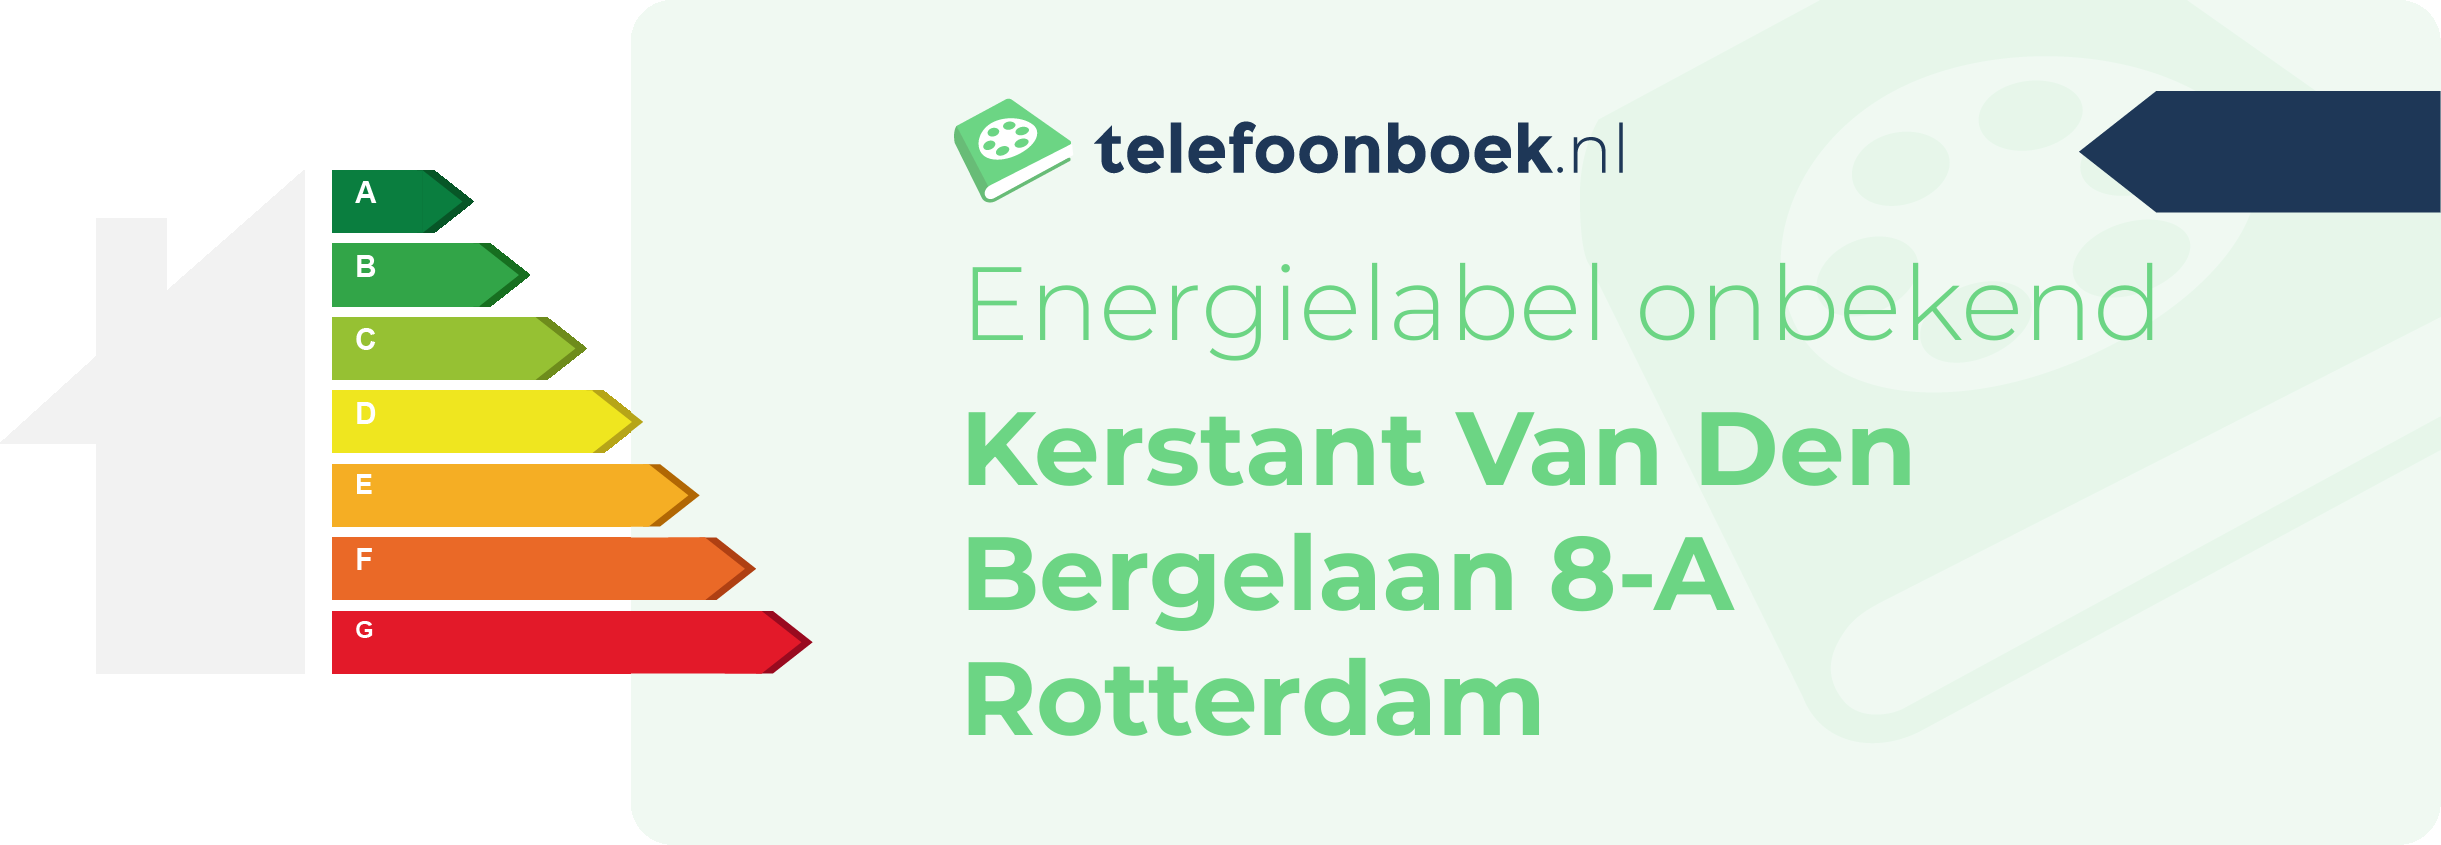 Energielabel Kerstant Van Den Bergelaan 8-A Rotterdam